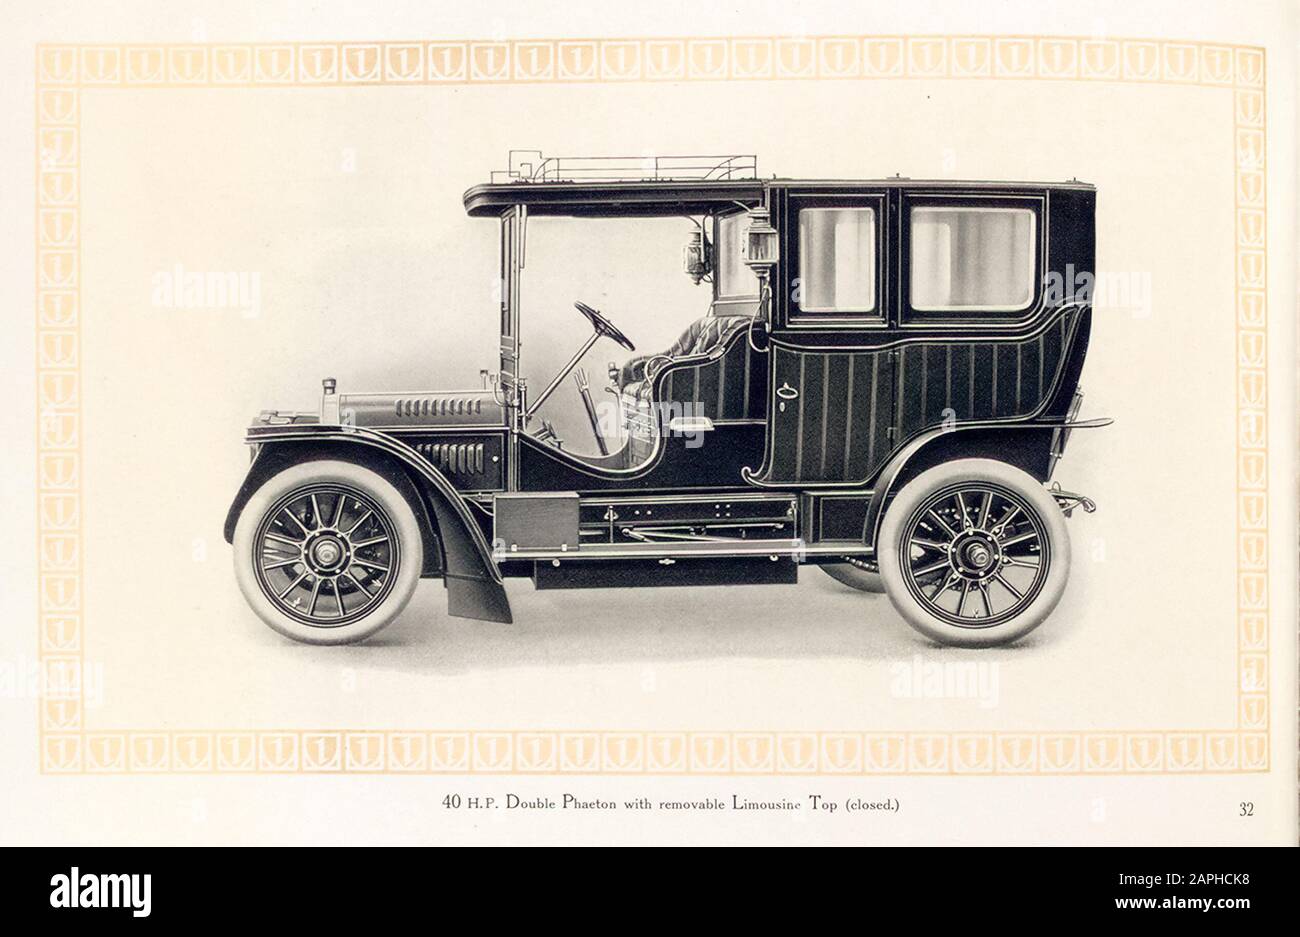 Auto d'epoca, auto a motore Benz, 40 hp doppio Phaeton con Limousine top rimovibile (chiuso) dal catalogo commerciale Benz & Co, illustrazione 1909 Foto Stock